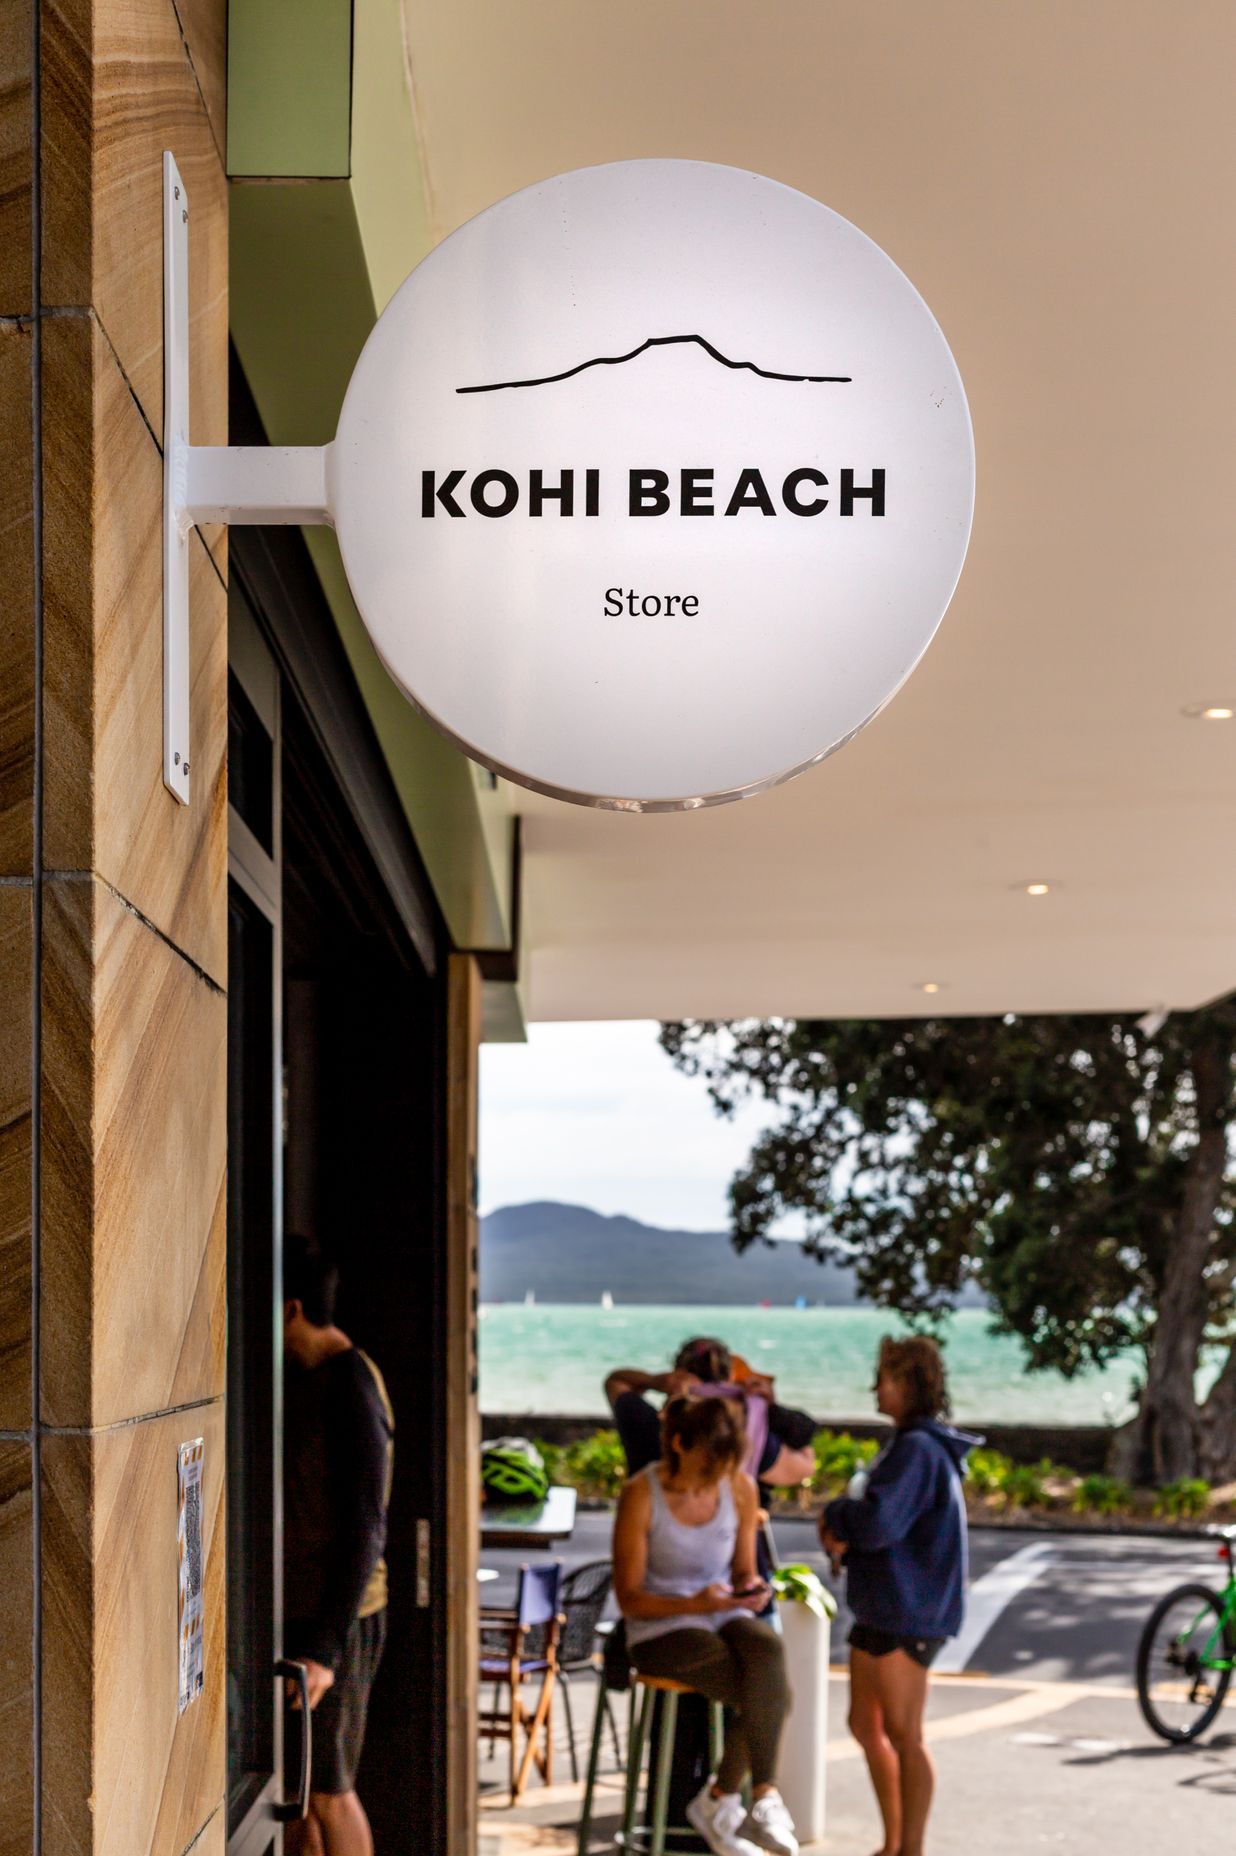 Kohi Beach Eatery and Store